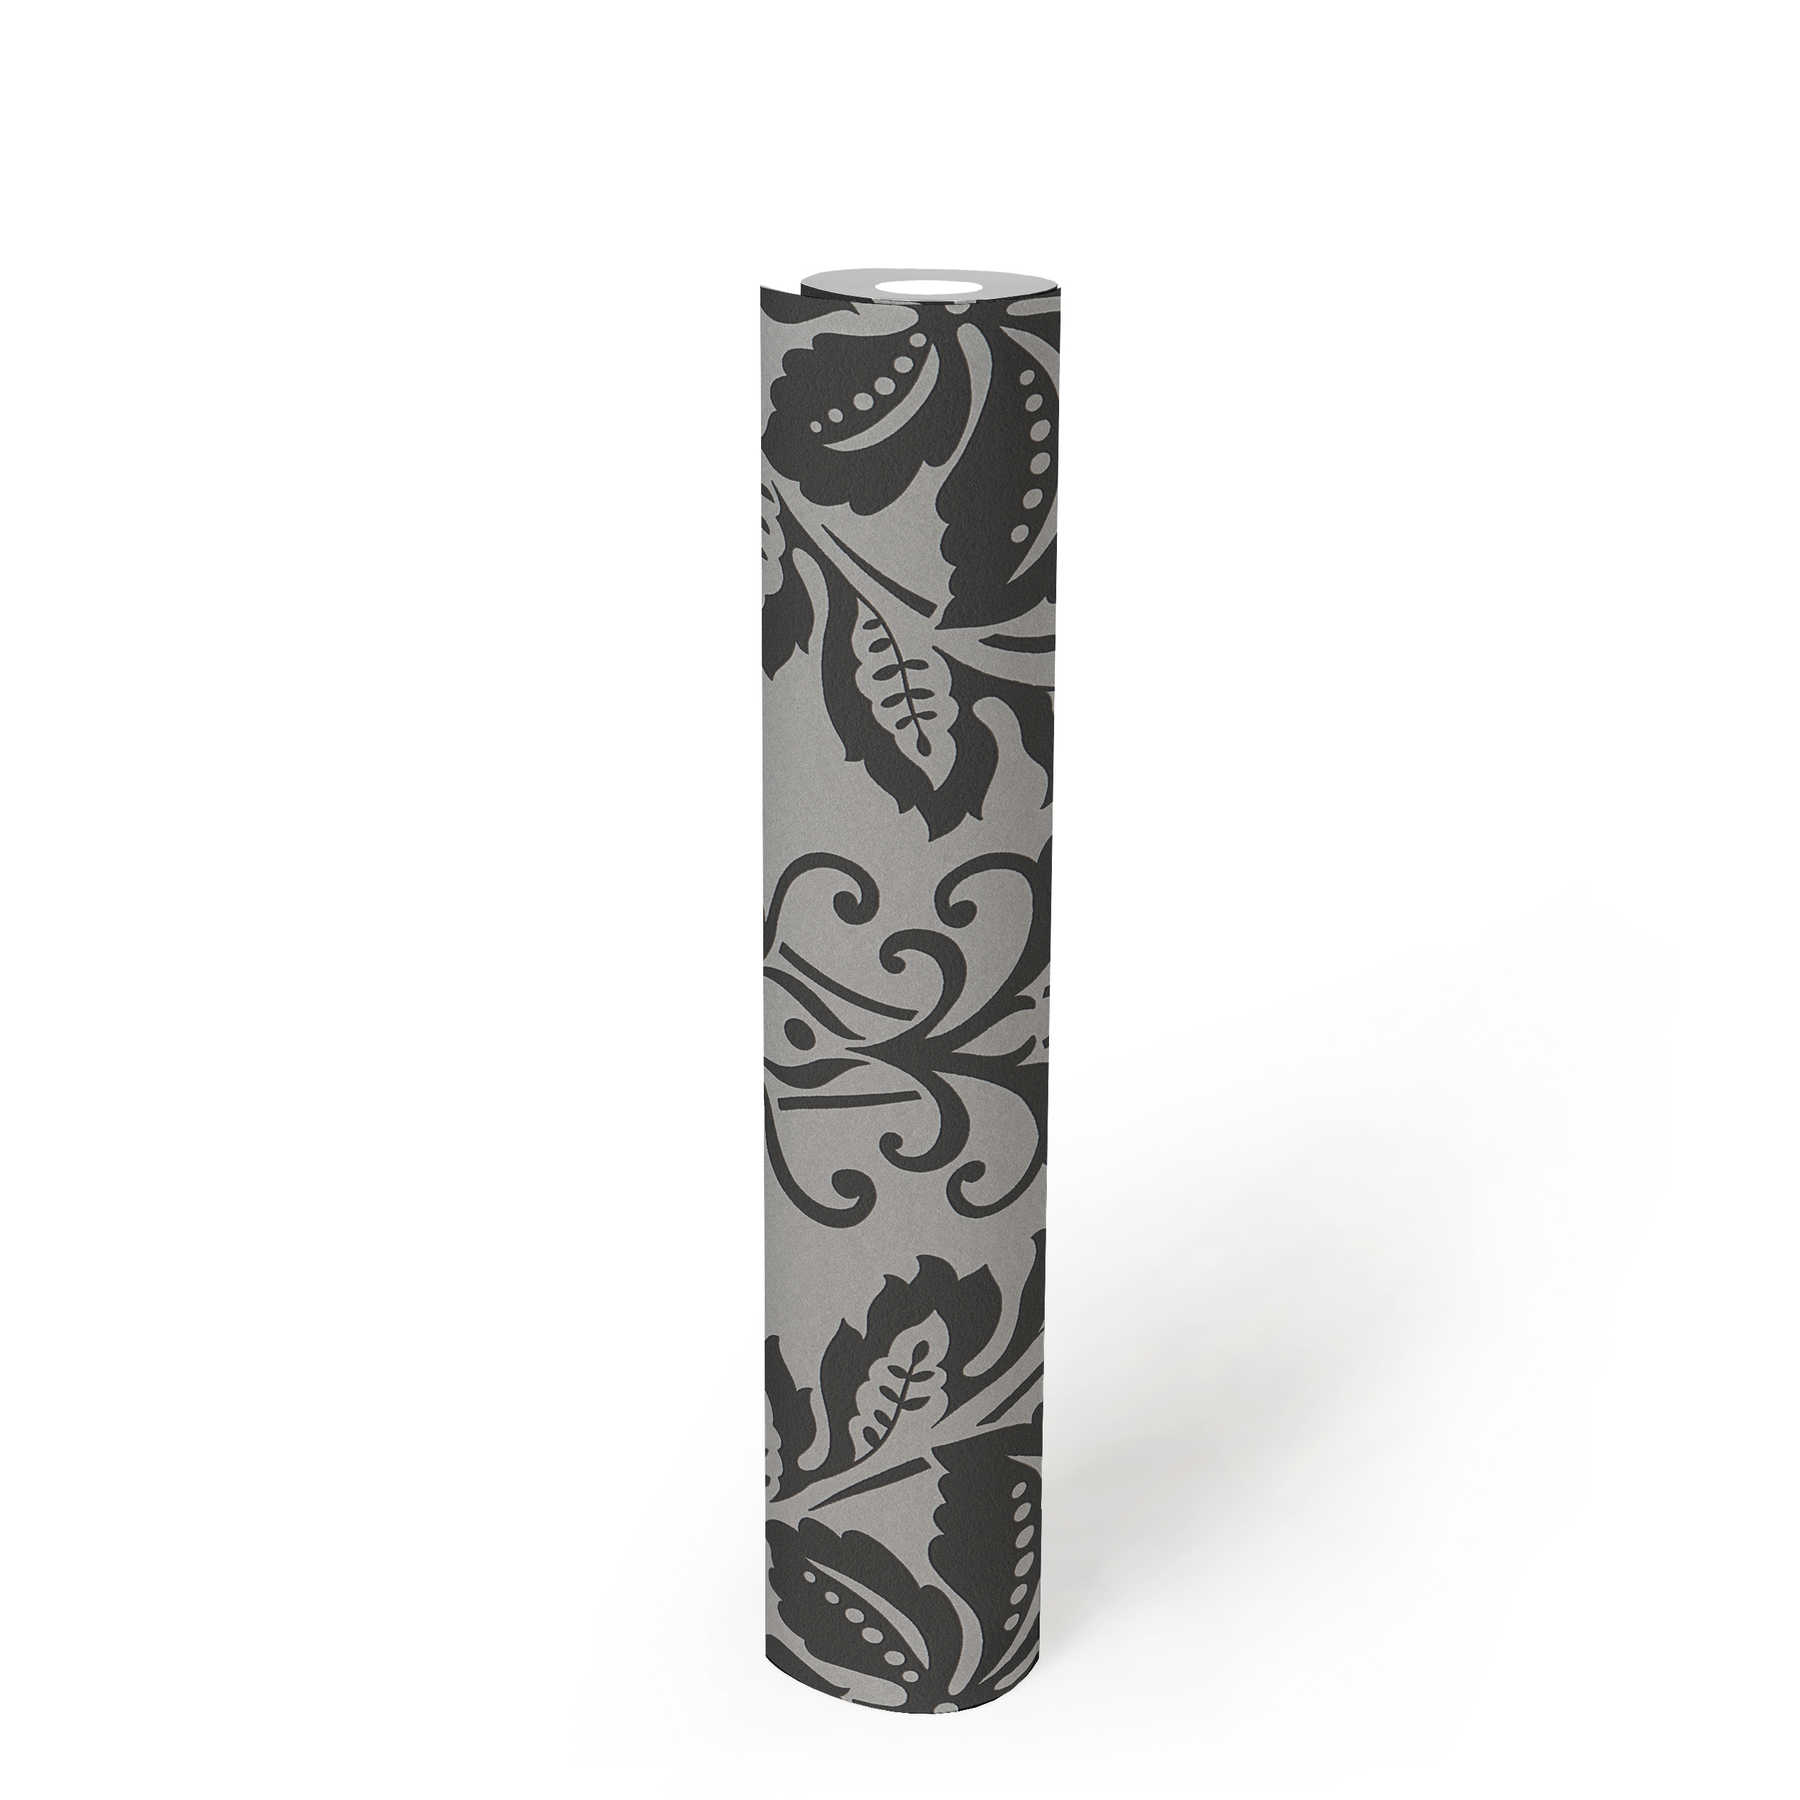             Papier peint néo-classique Ornament, floral - gris, noir
        